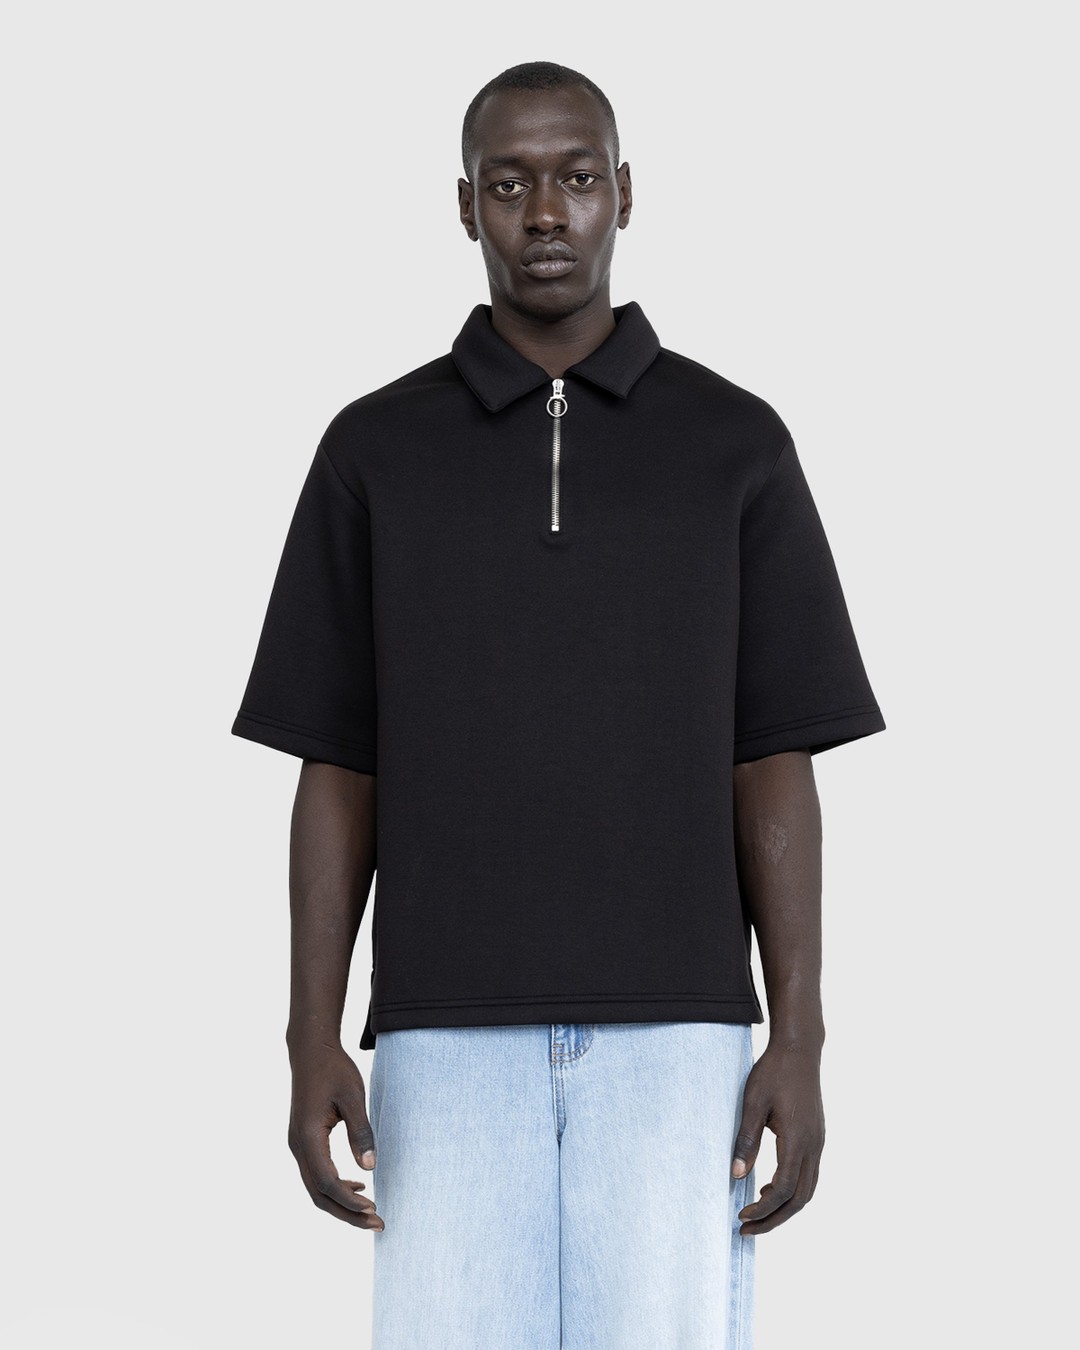 Trussardi – Quarter-Zip Scuba Polo Black  - Shirts - Black - Image 2